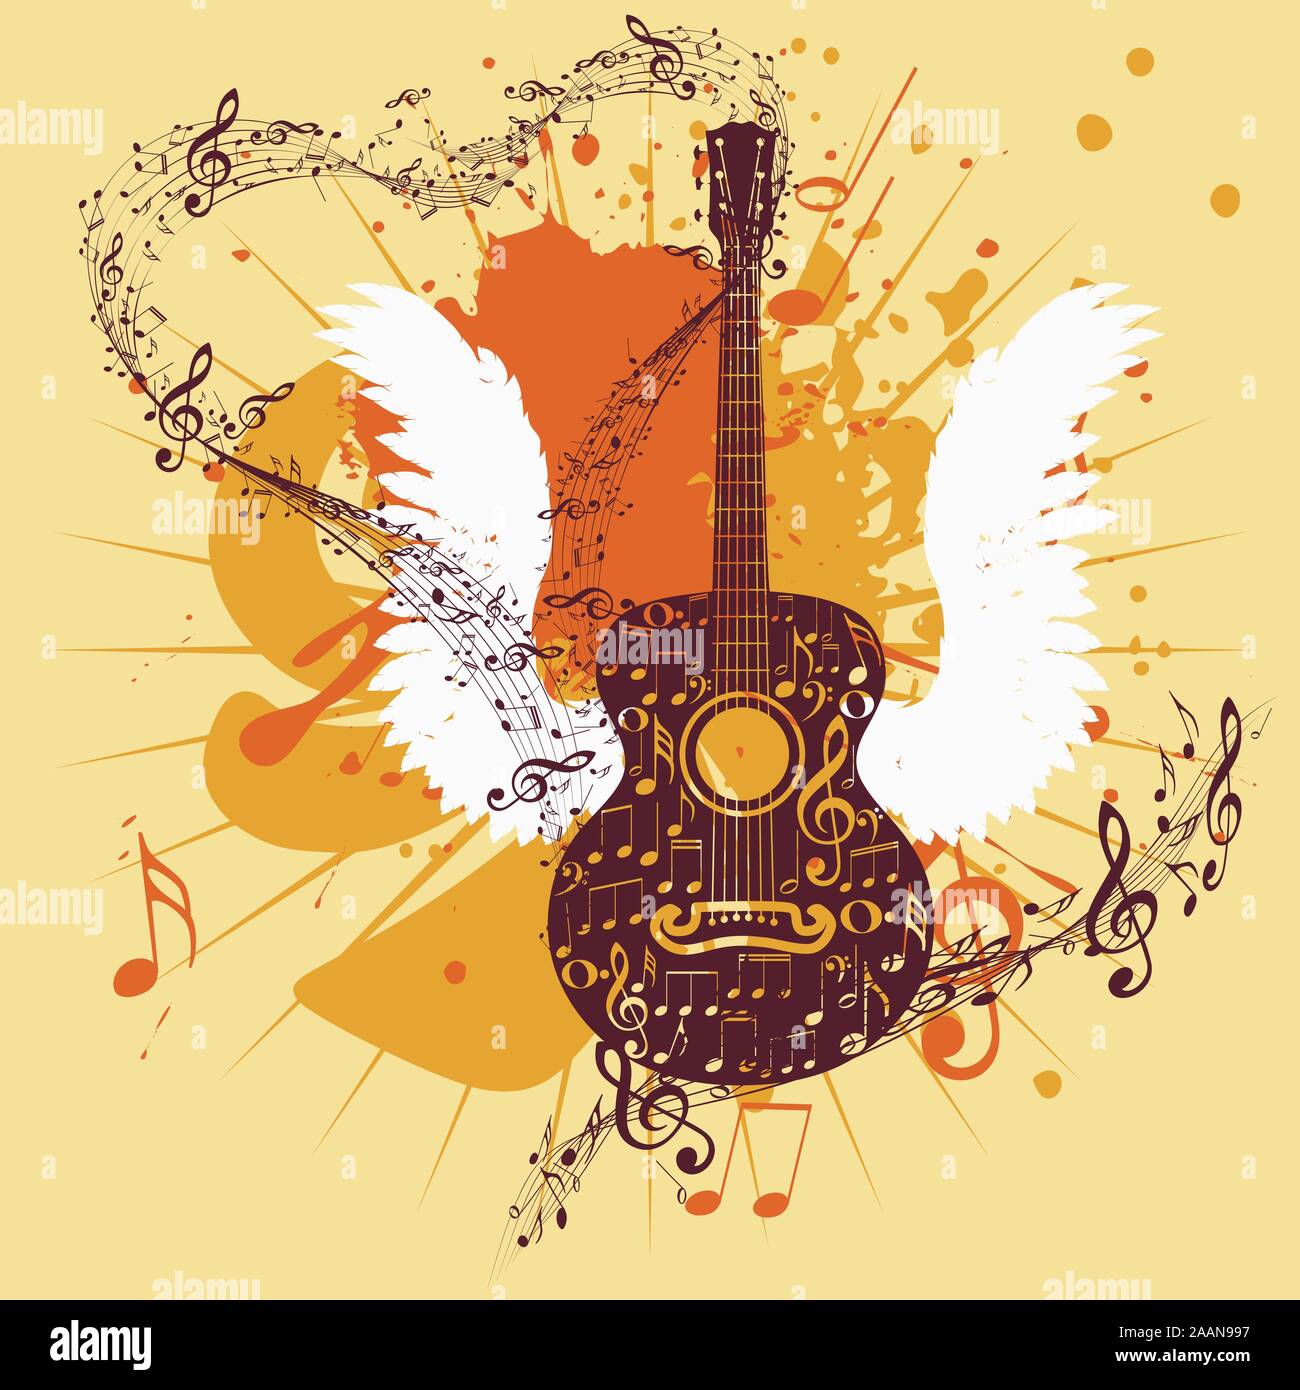 Grunge Plakat mit stilisierten Gitarre und Noten Stock-Vektorgrafik - Alamy